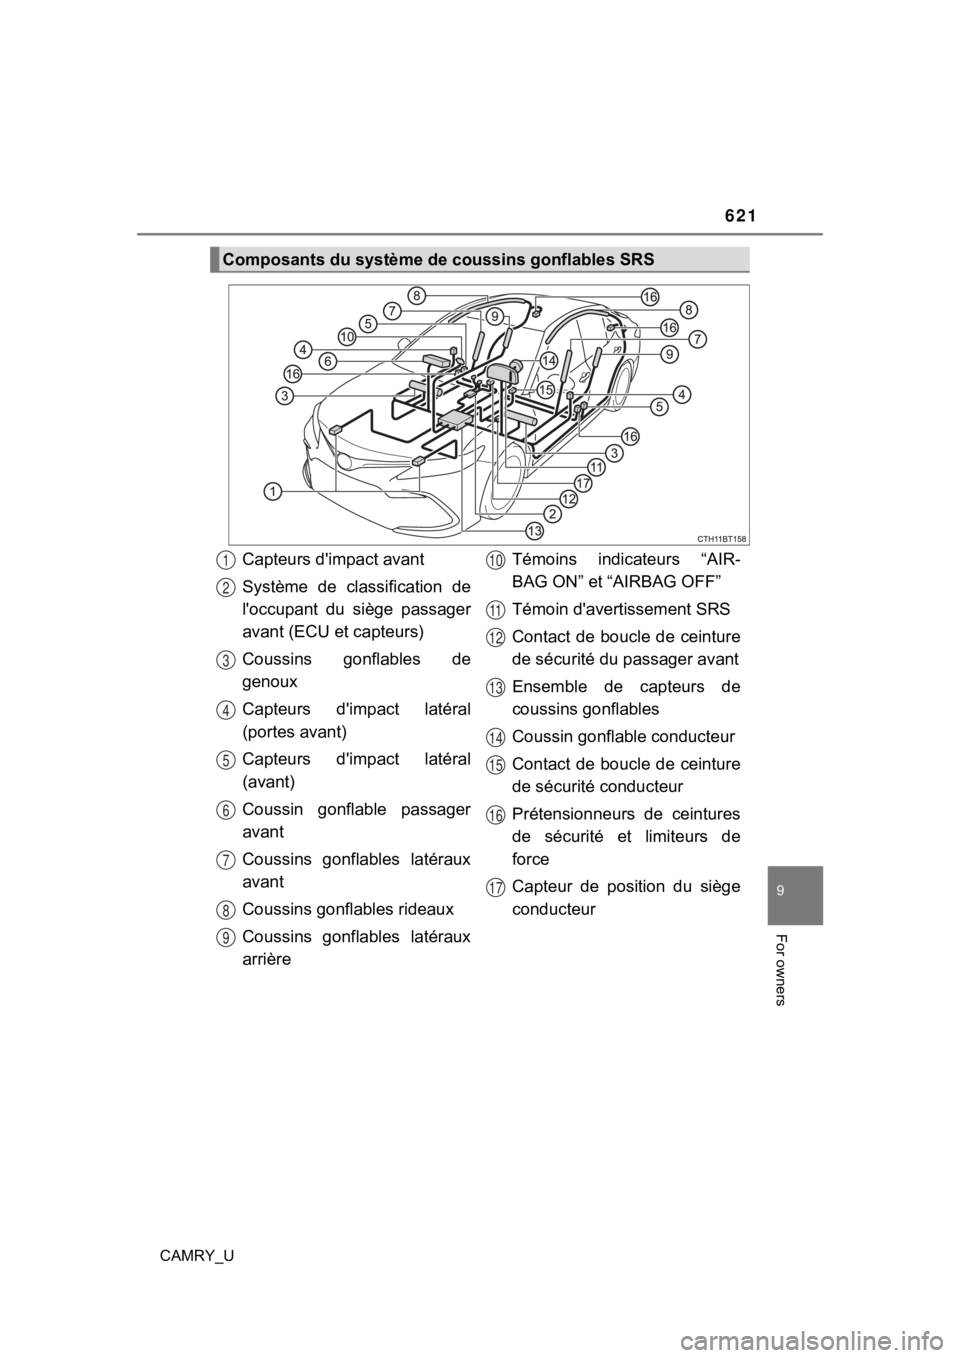 TOYOTA CAMRY 2023  Owners Manual 621
9
For owners
CAMRY_U
Composants du système de coussins gonflables SRS
Capteurs d'impact avant
Système  de  classification  de
l'occupant  du  siège  passager
avant (ECU et capteurs)
Cou